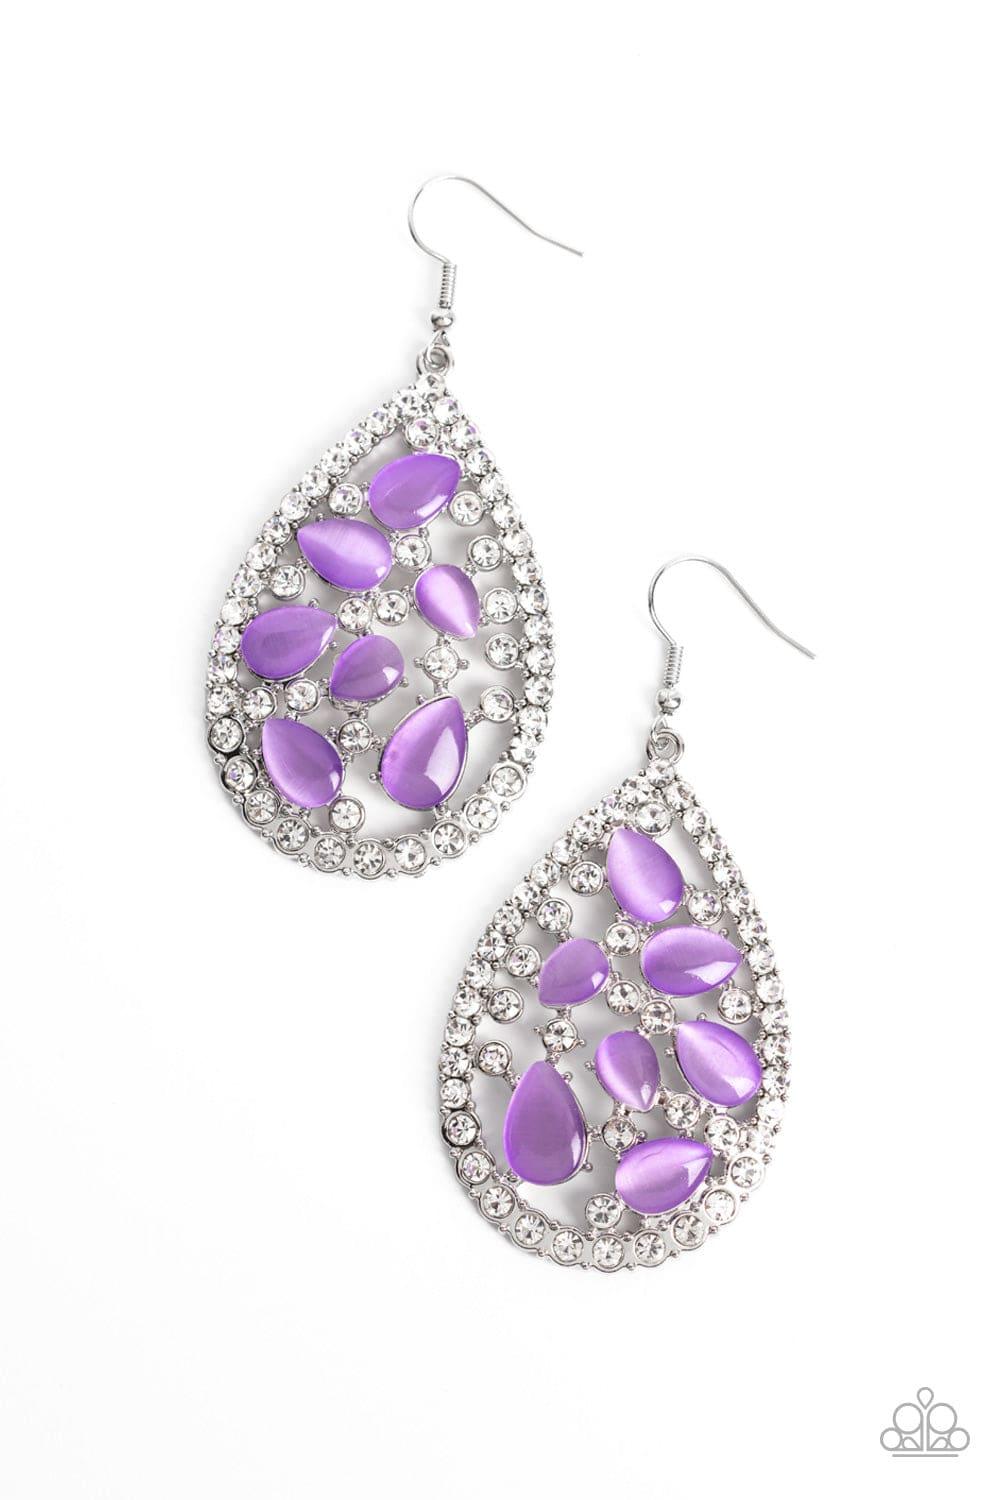 Paparazzi Accessories - Cats Eye Class - Purple Earrings - Bling by JessieK